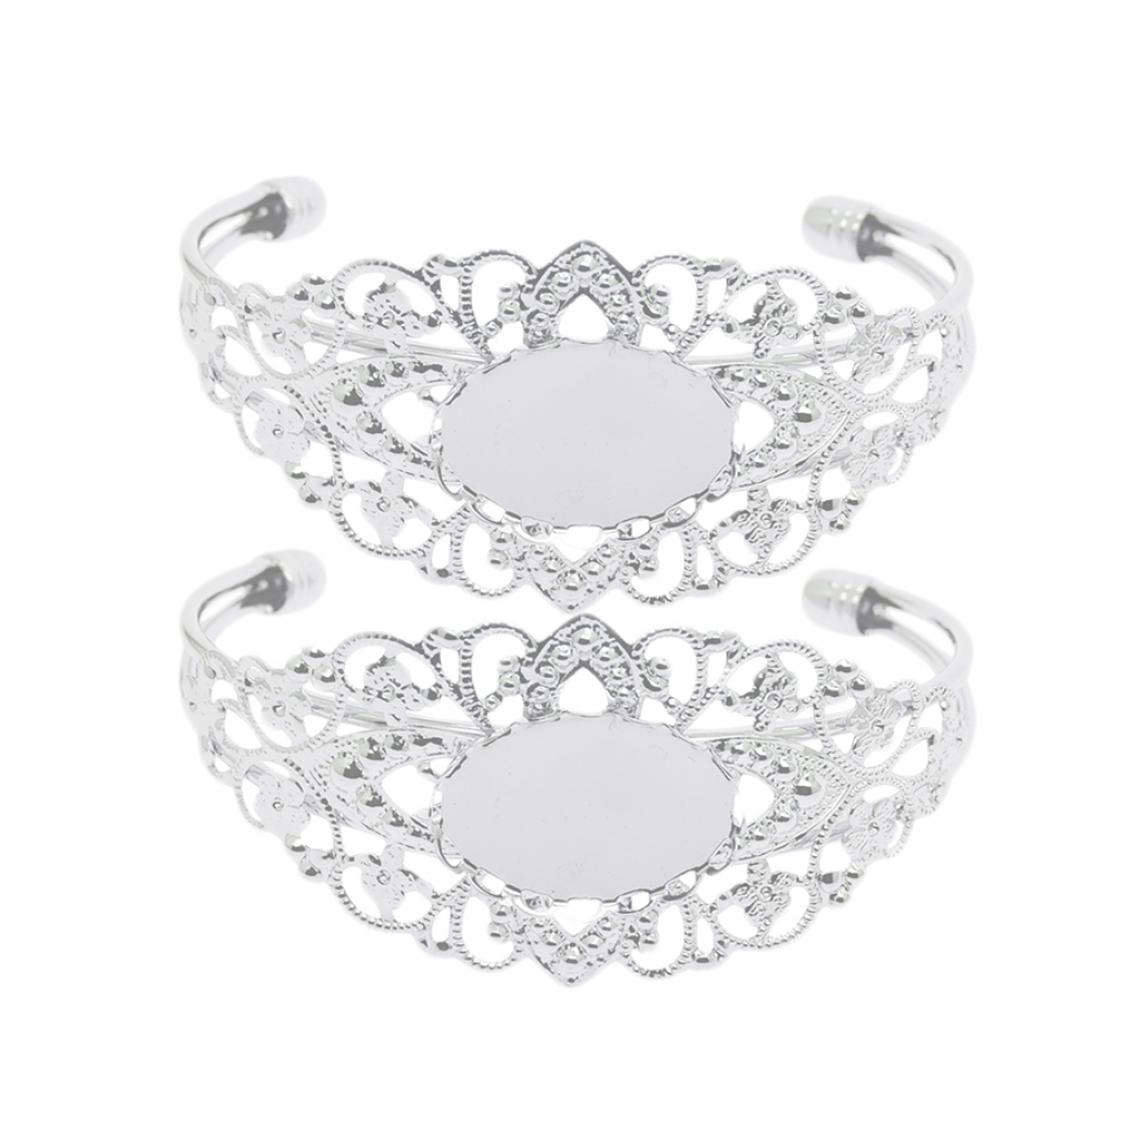 marque generique - 2 Pcs Bracelet Femmes Bracelet Jonc Réglable Chaîne Bijoux Romantique Cadeau de l'Amour - Bracelet connecté